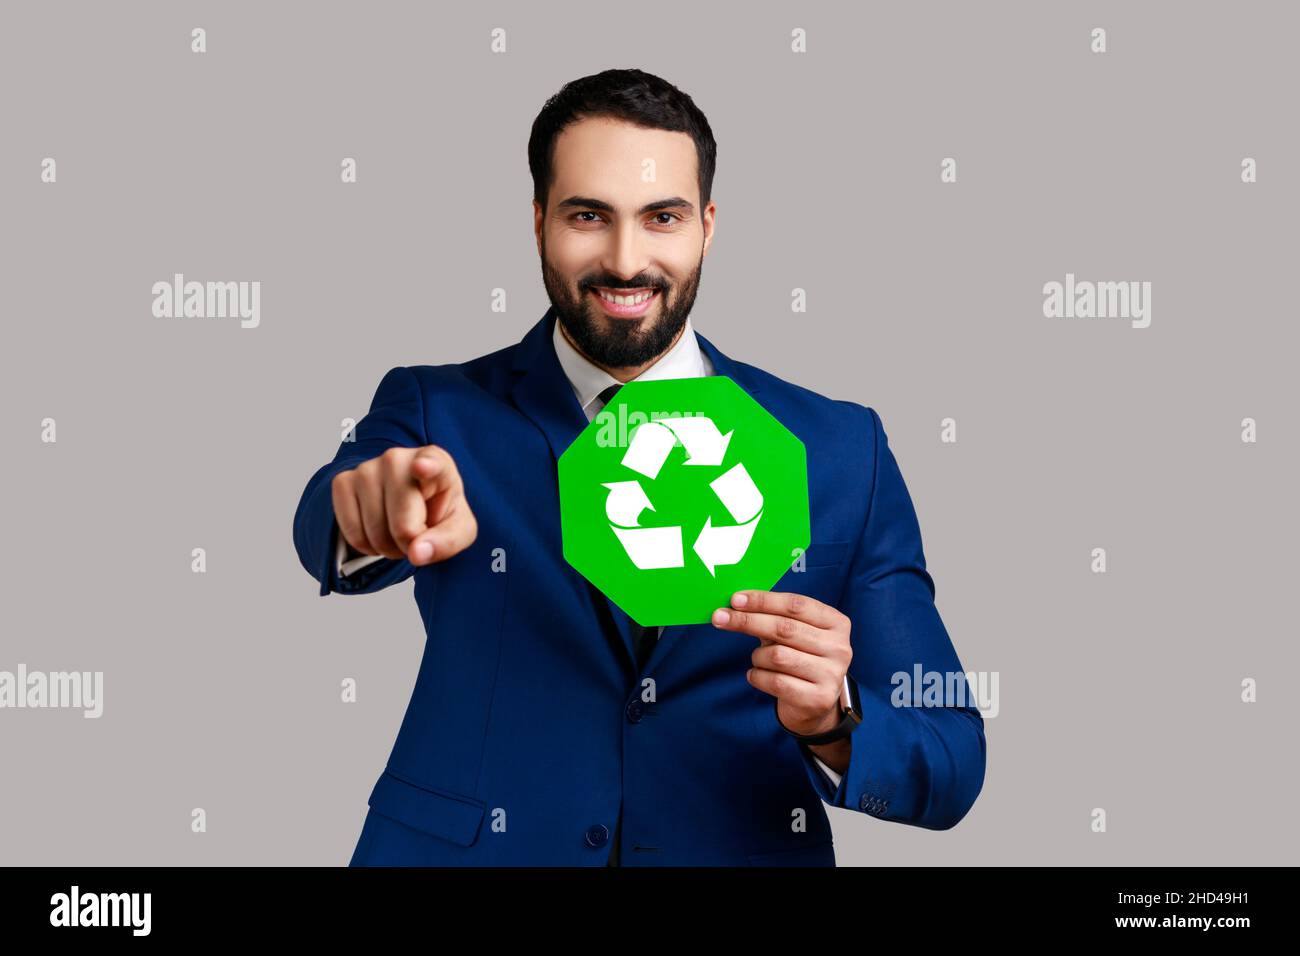 Positiver optimistischer Mann mit grünem Recycling-Schild, Umweltschutz, Ökologie-Konzept, zeigt auf Kamera, trägt offiziellen Stil Anzug. Innenaufnahme des Studios isoliert auf grauem Hintergrund. Stockfoto